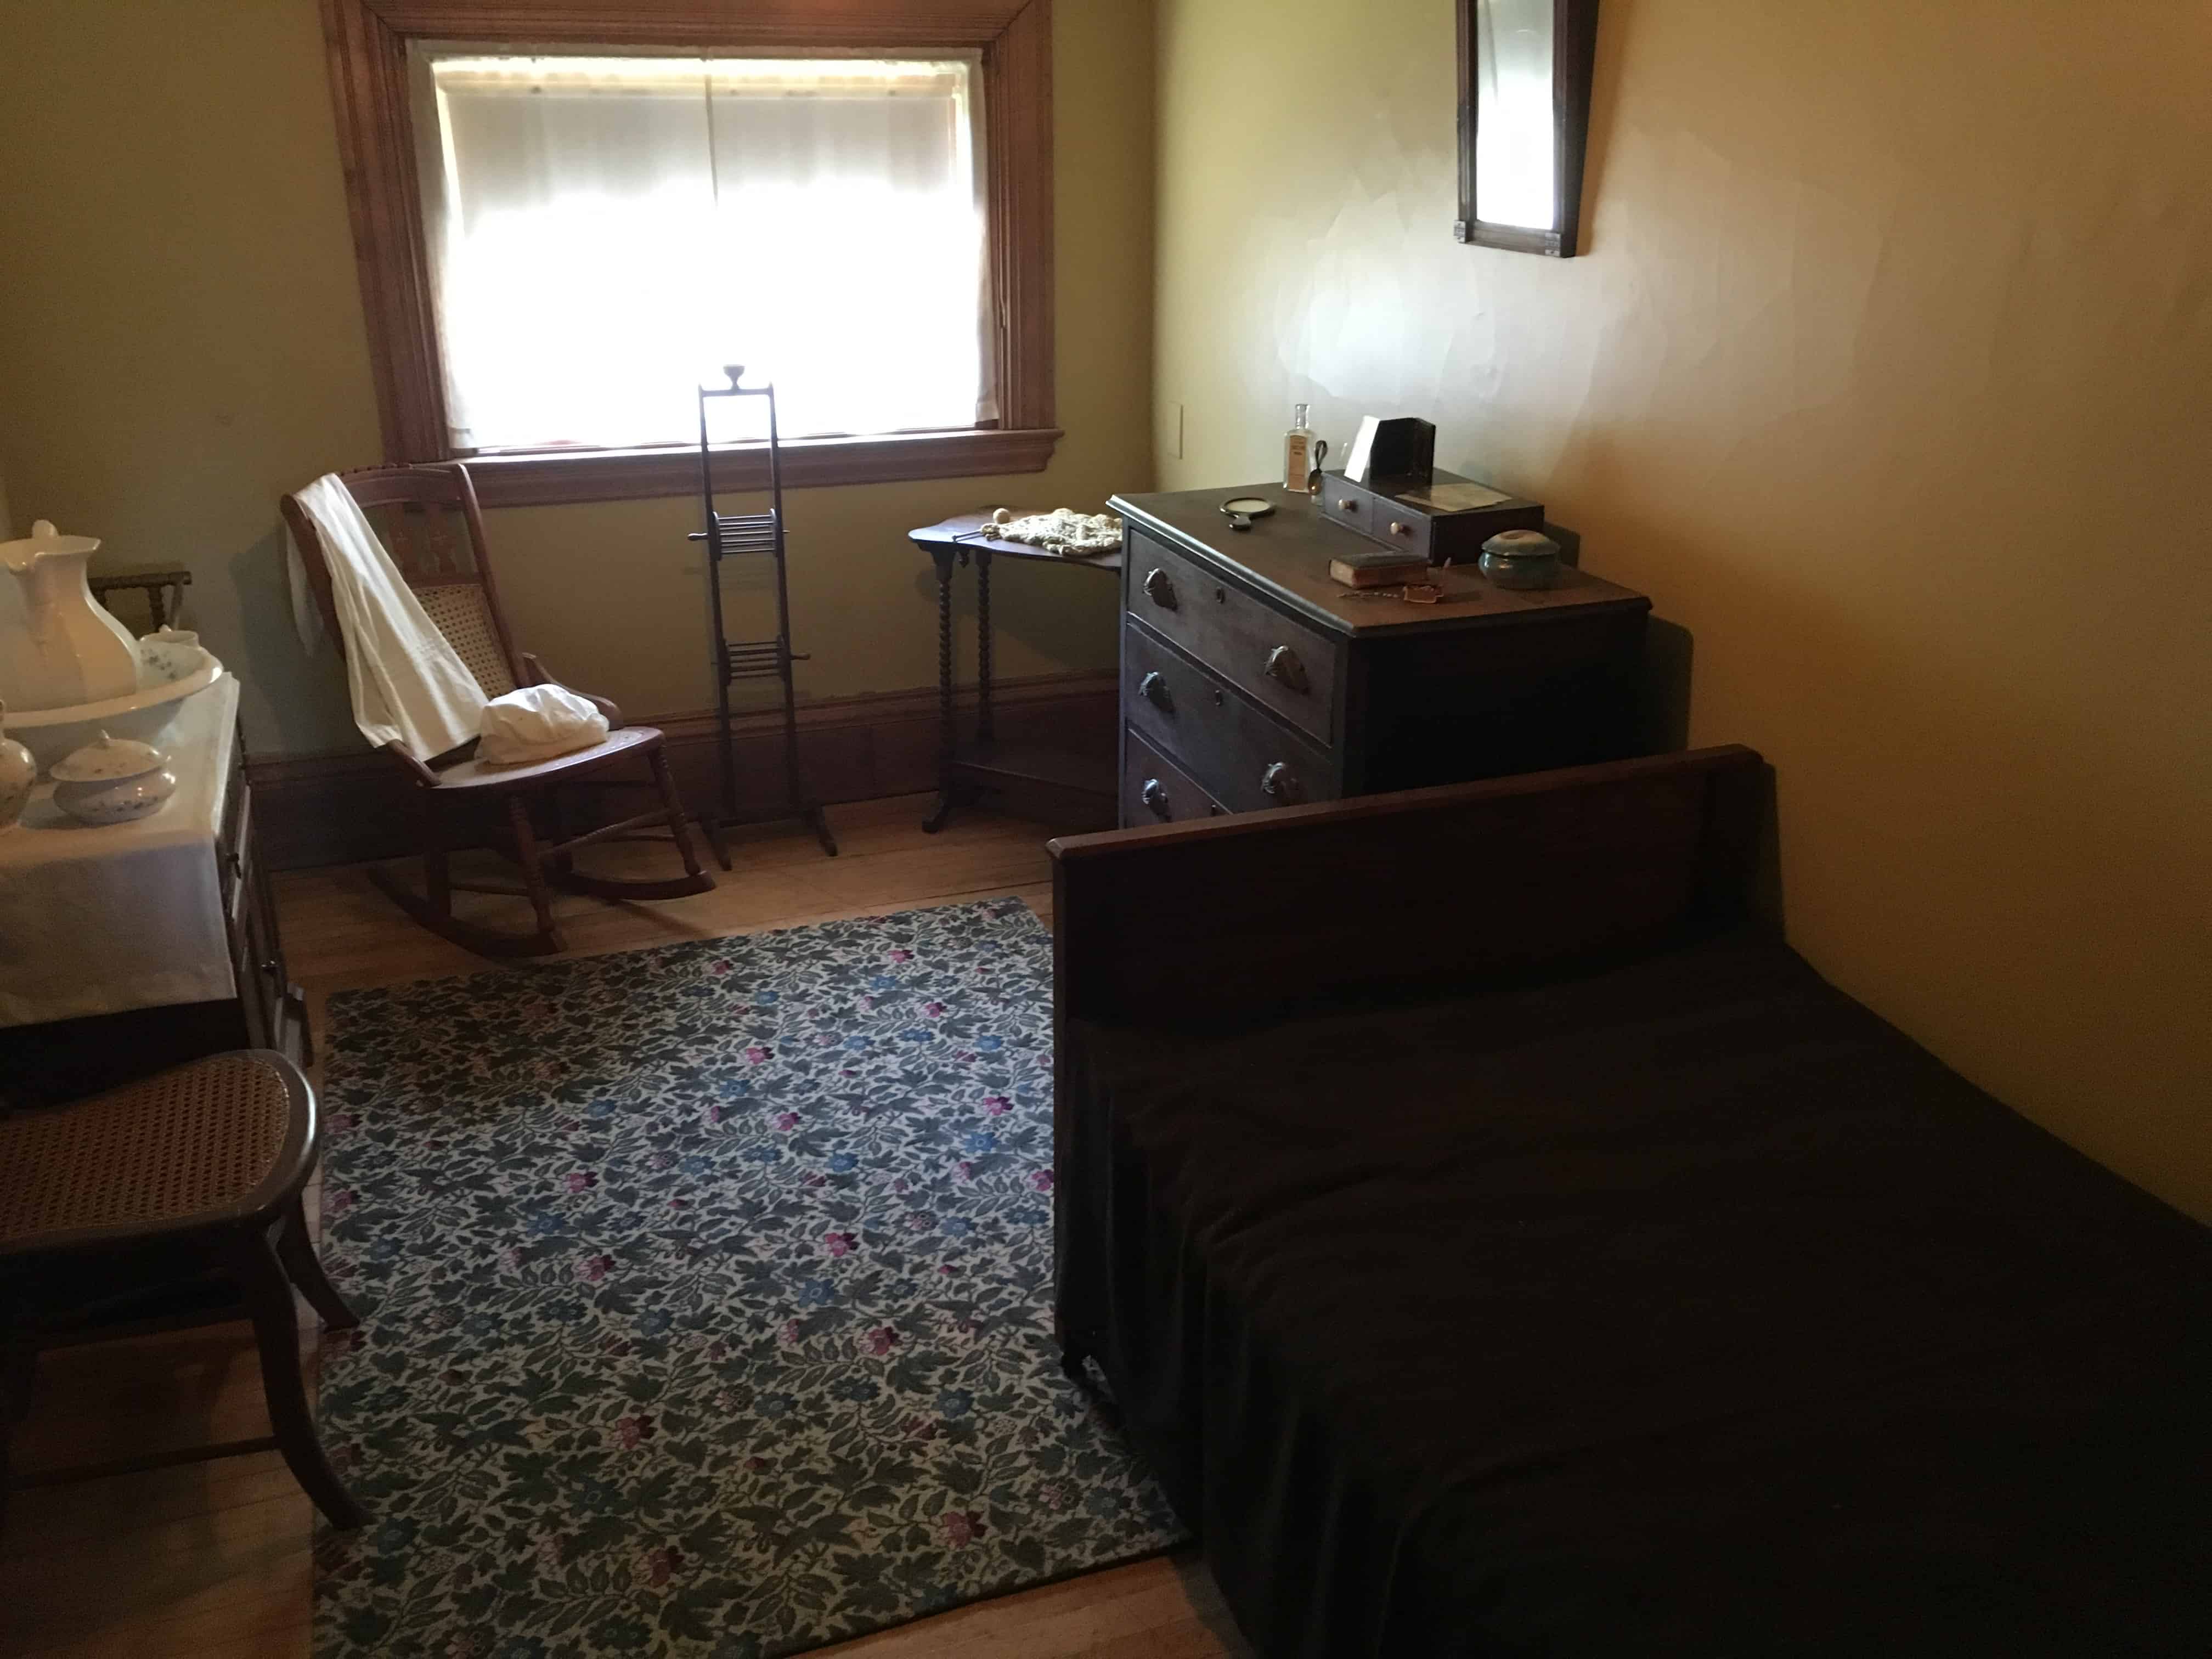 Servant's room at the John J. Glessner House in Chicago, Illinois